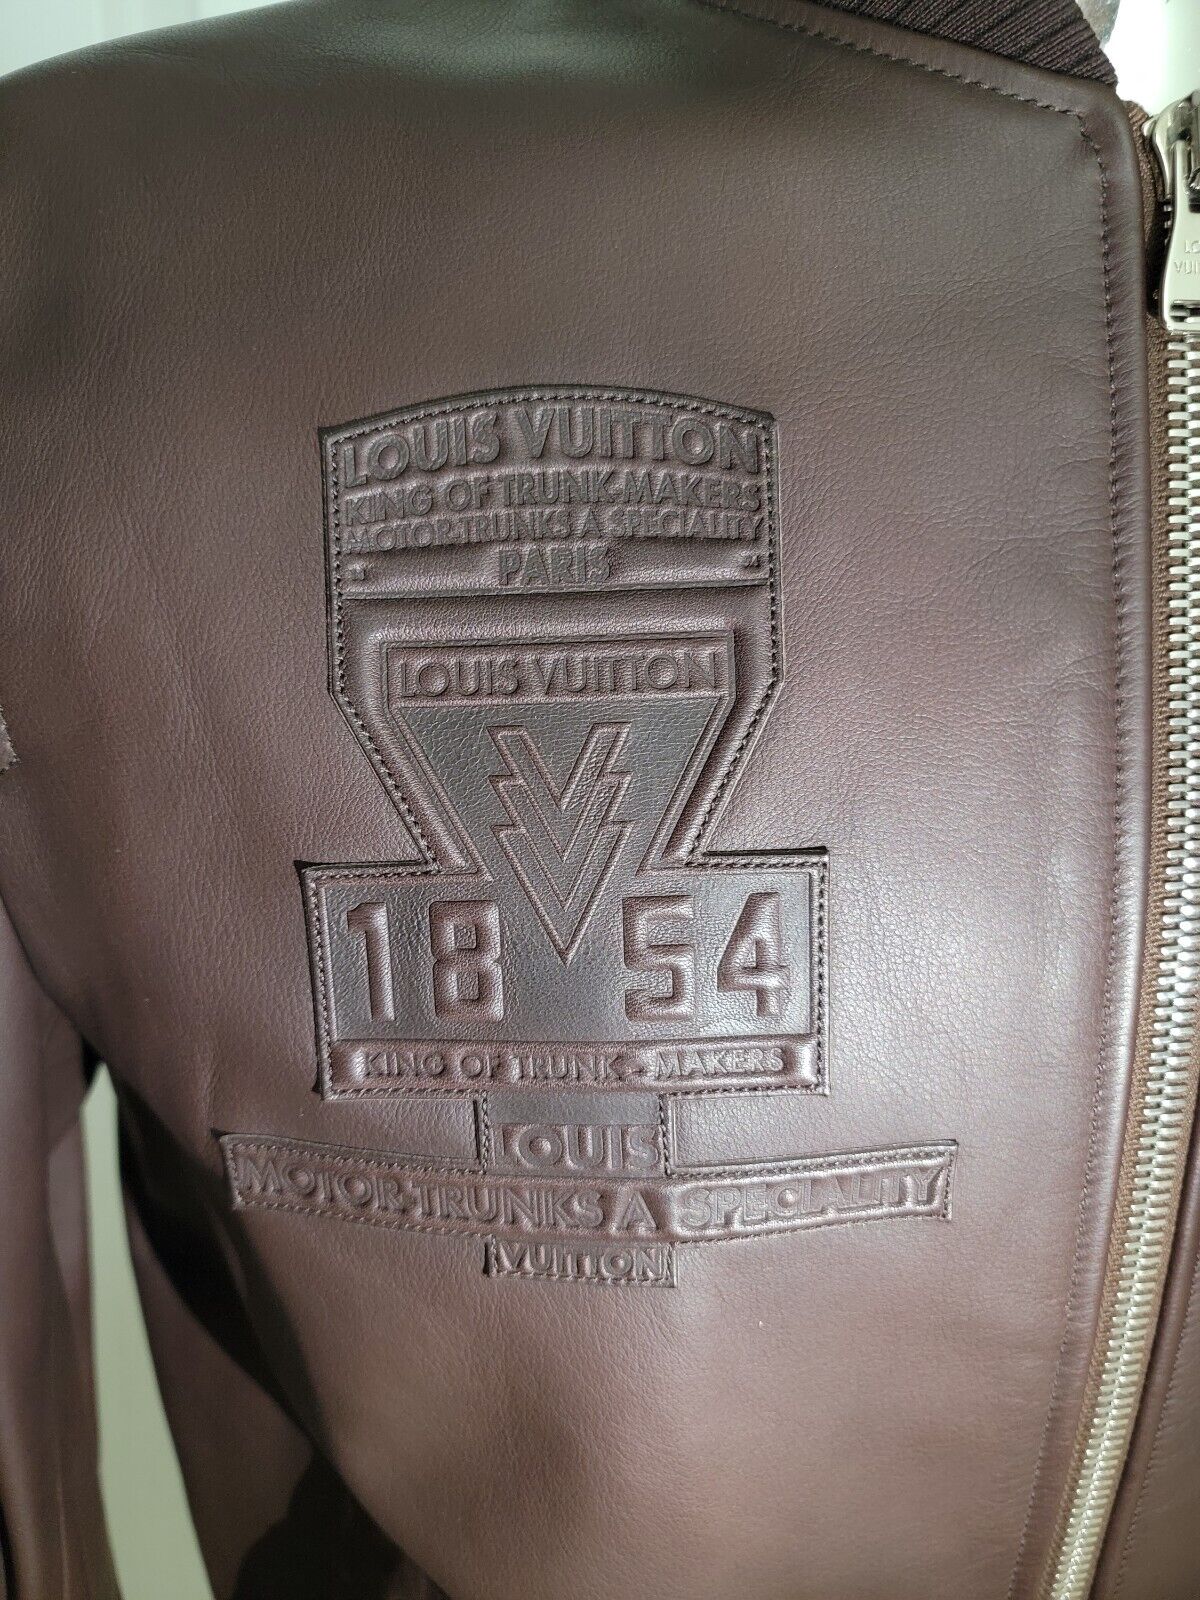 Louis Vuitton Leather Patch Blouson Jacket